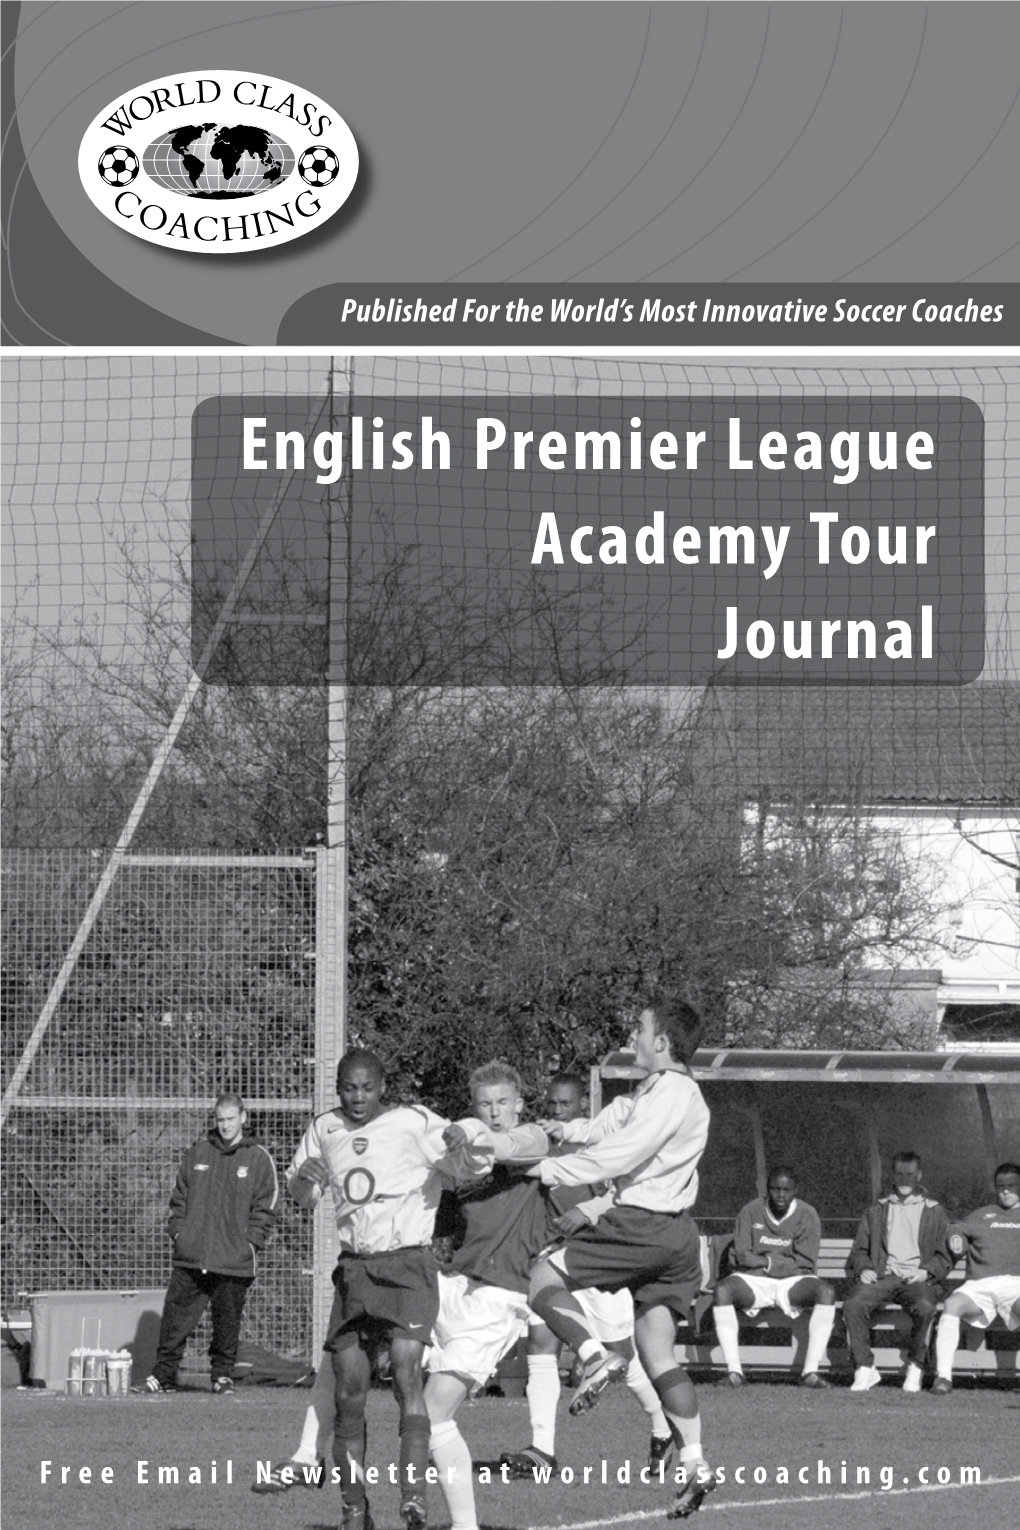 English Premier League Academy Tour Journal